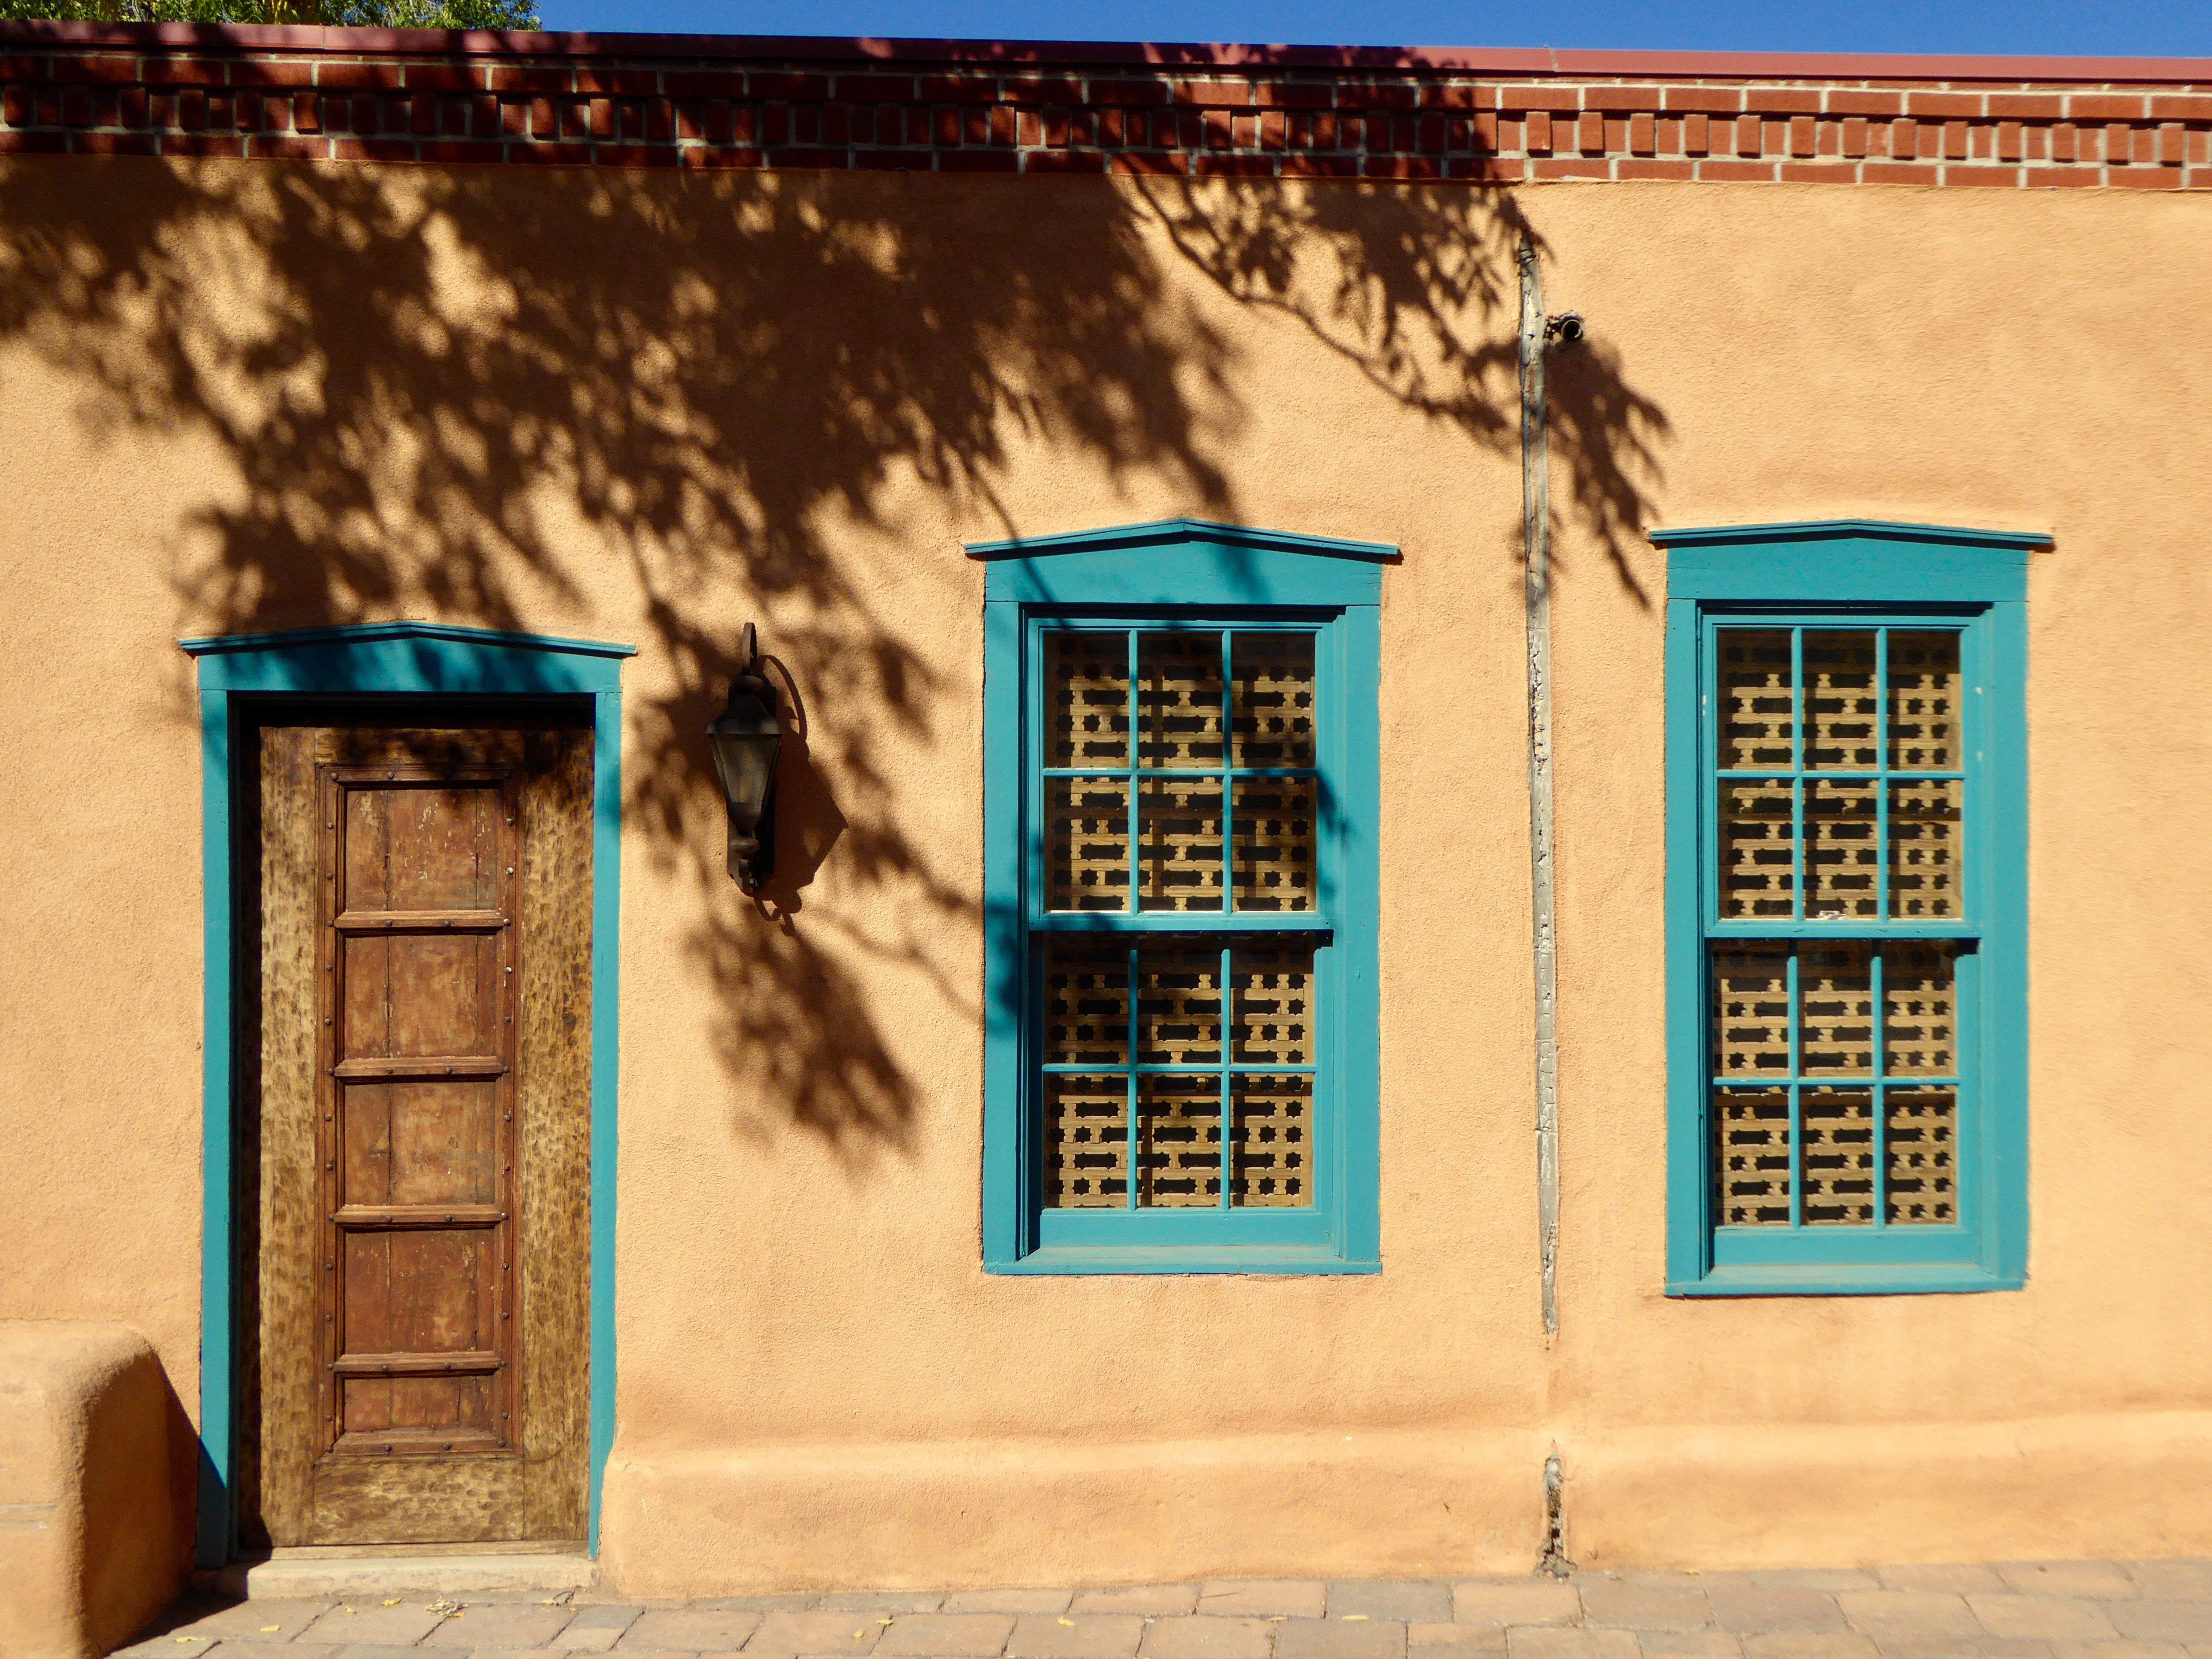 Edifício de estilo Pueblo cor de areia com detalhes em azul 